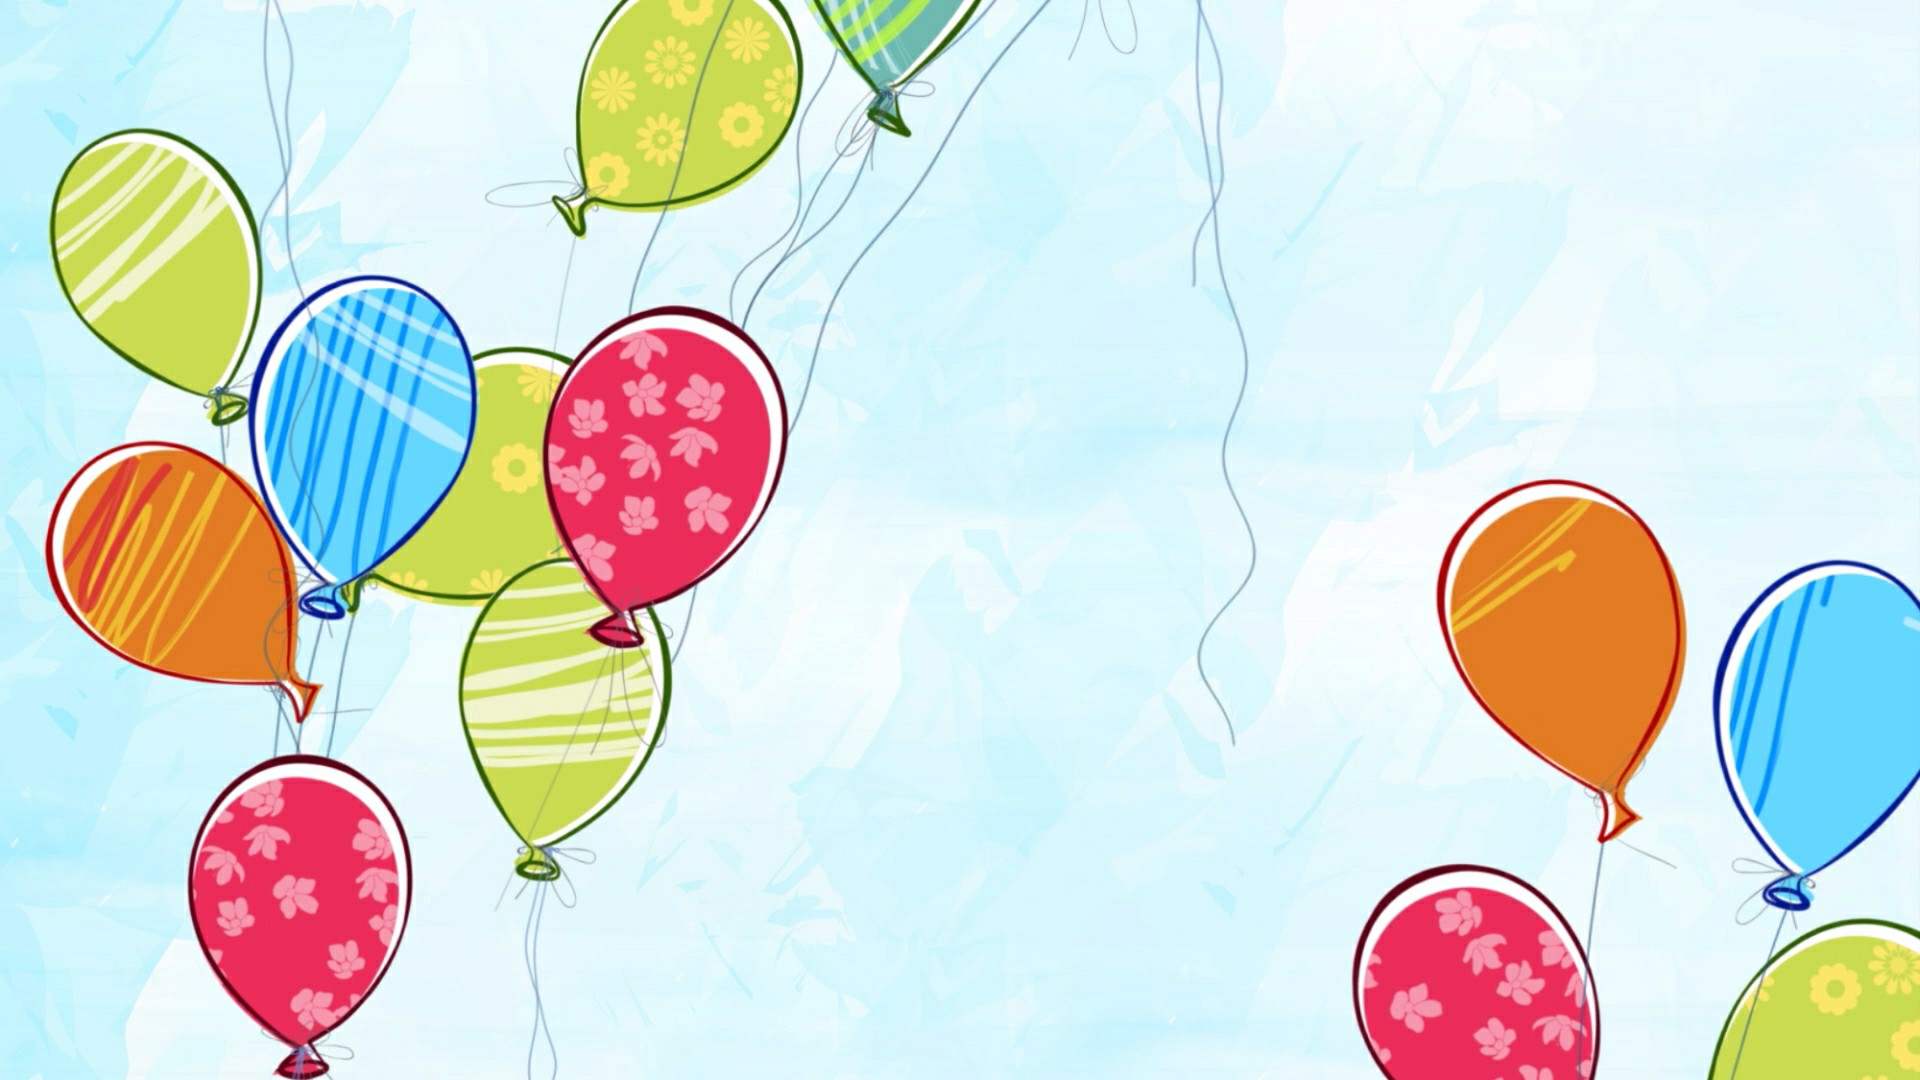 六一儿童彩色气球卡通背景素材 125246